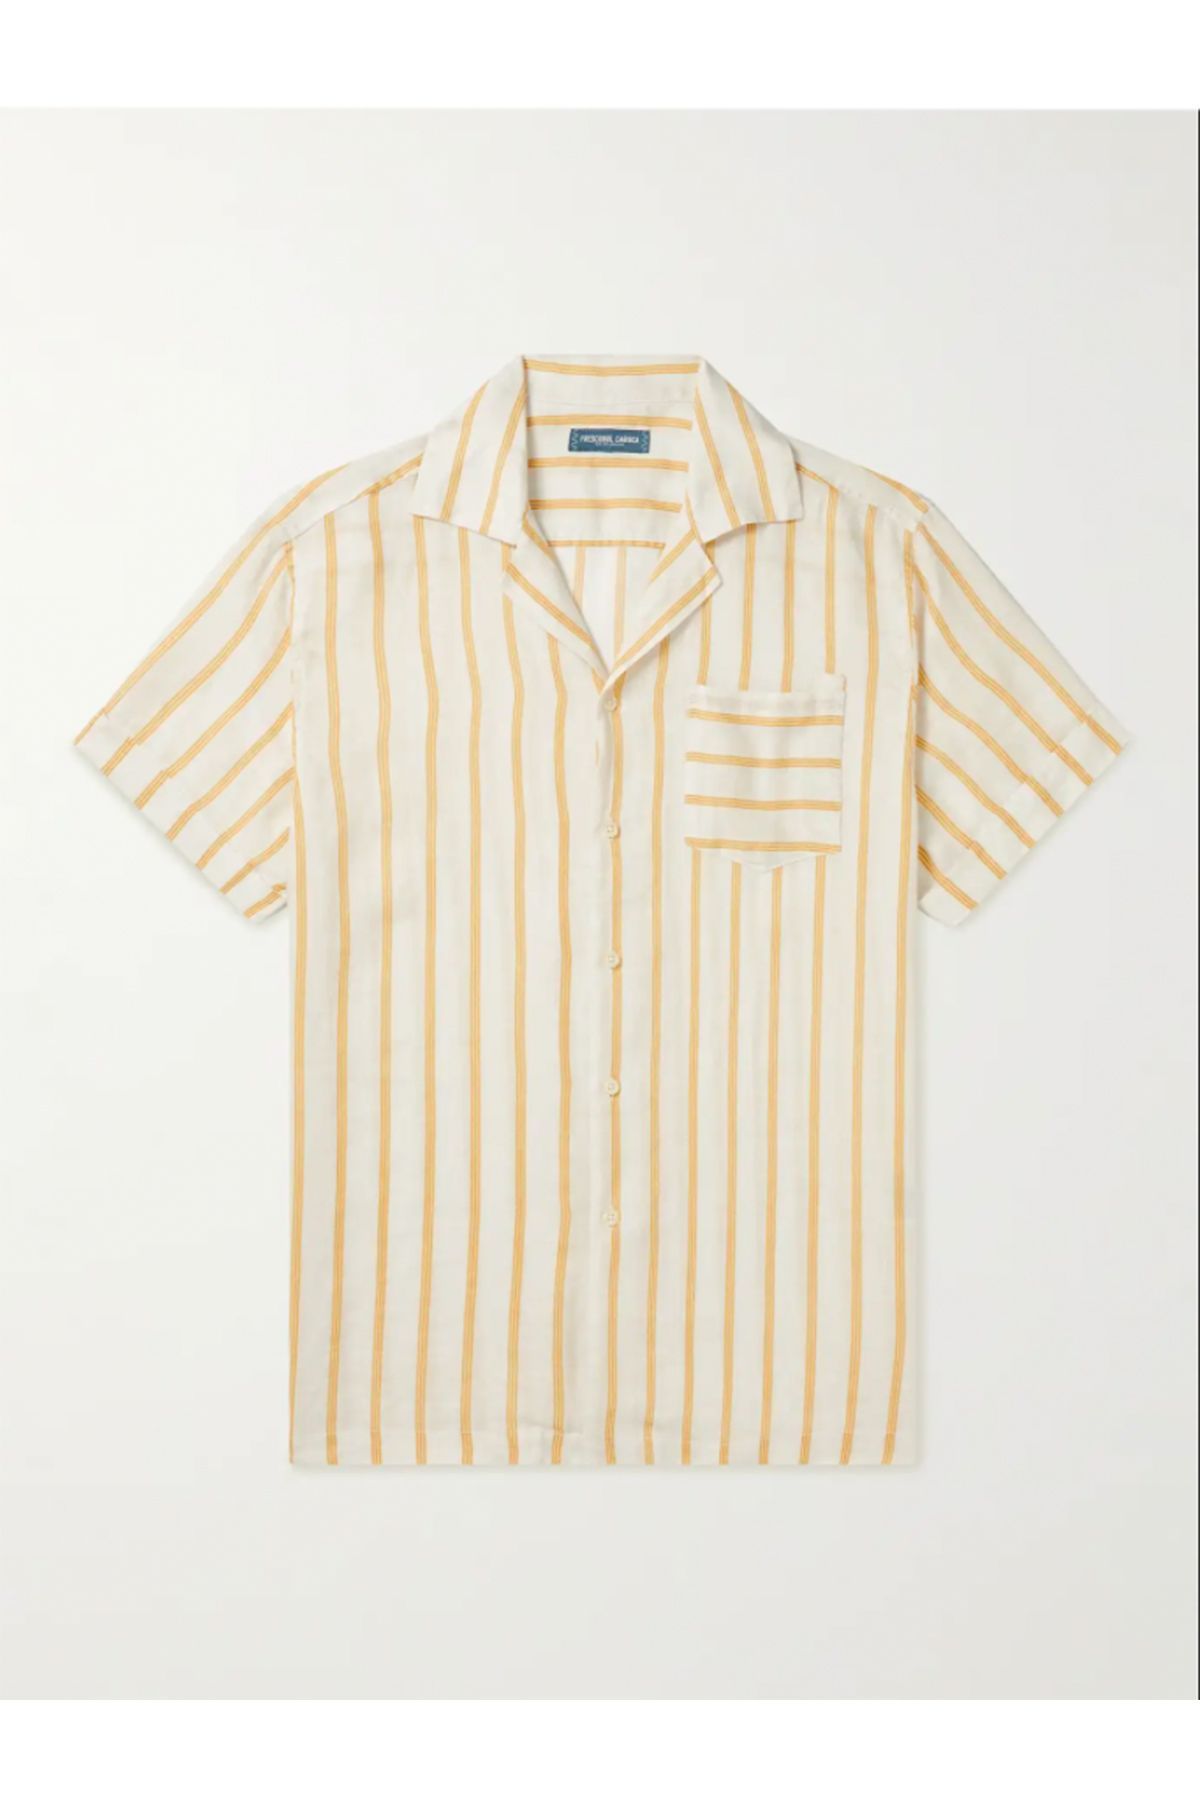 12 Best Men's Linen Shirts 2023- Summer Linen Shirts